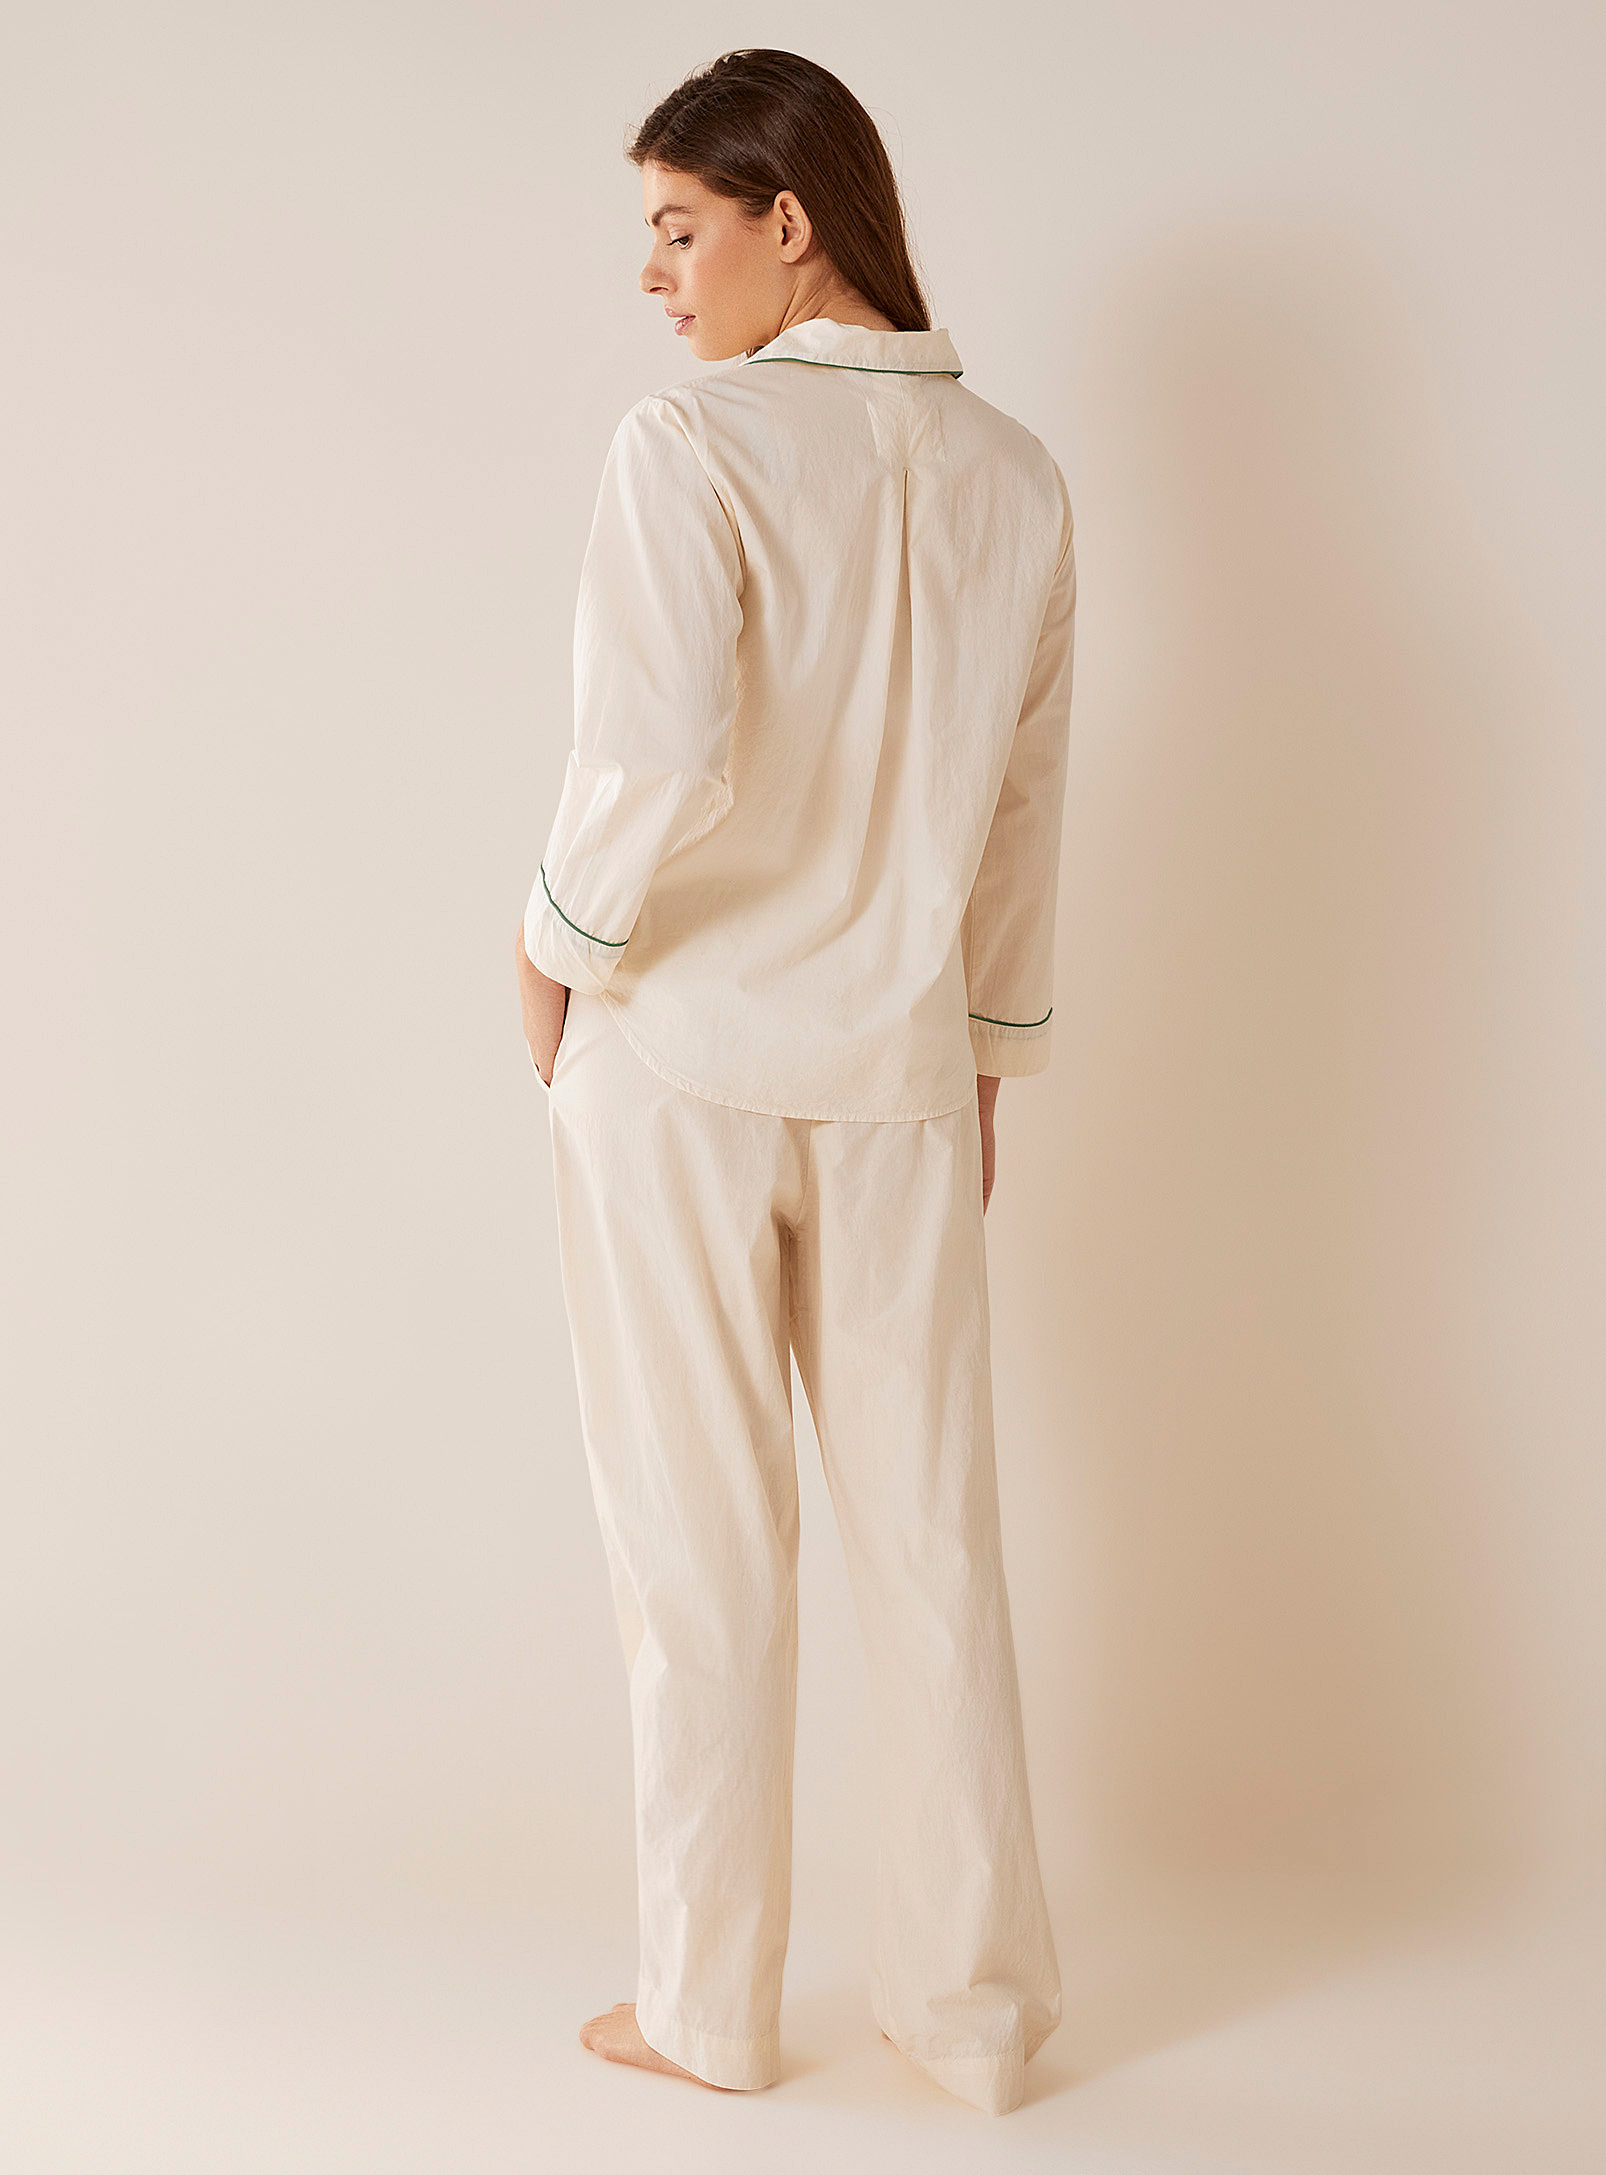 Aiayu - L'ensemble pyjama coton bio liséré vert